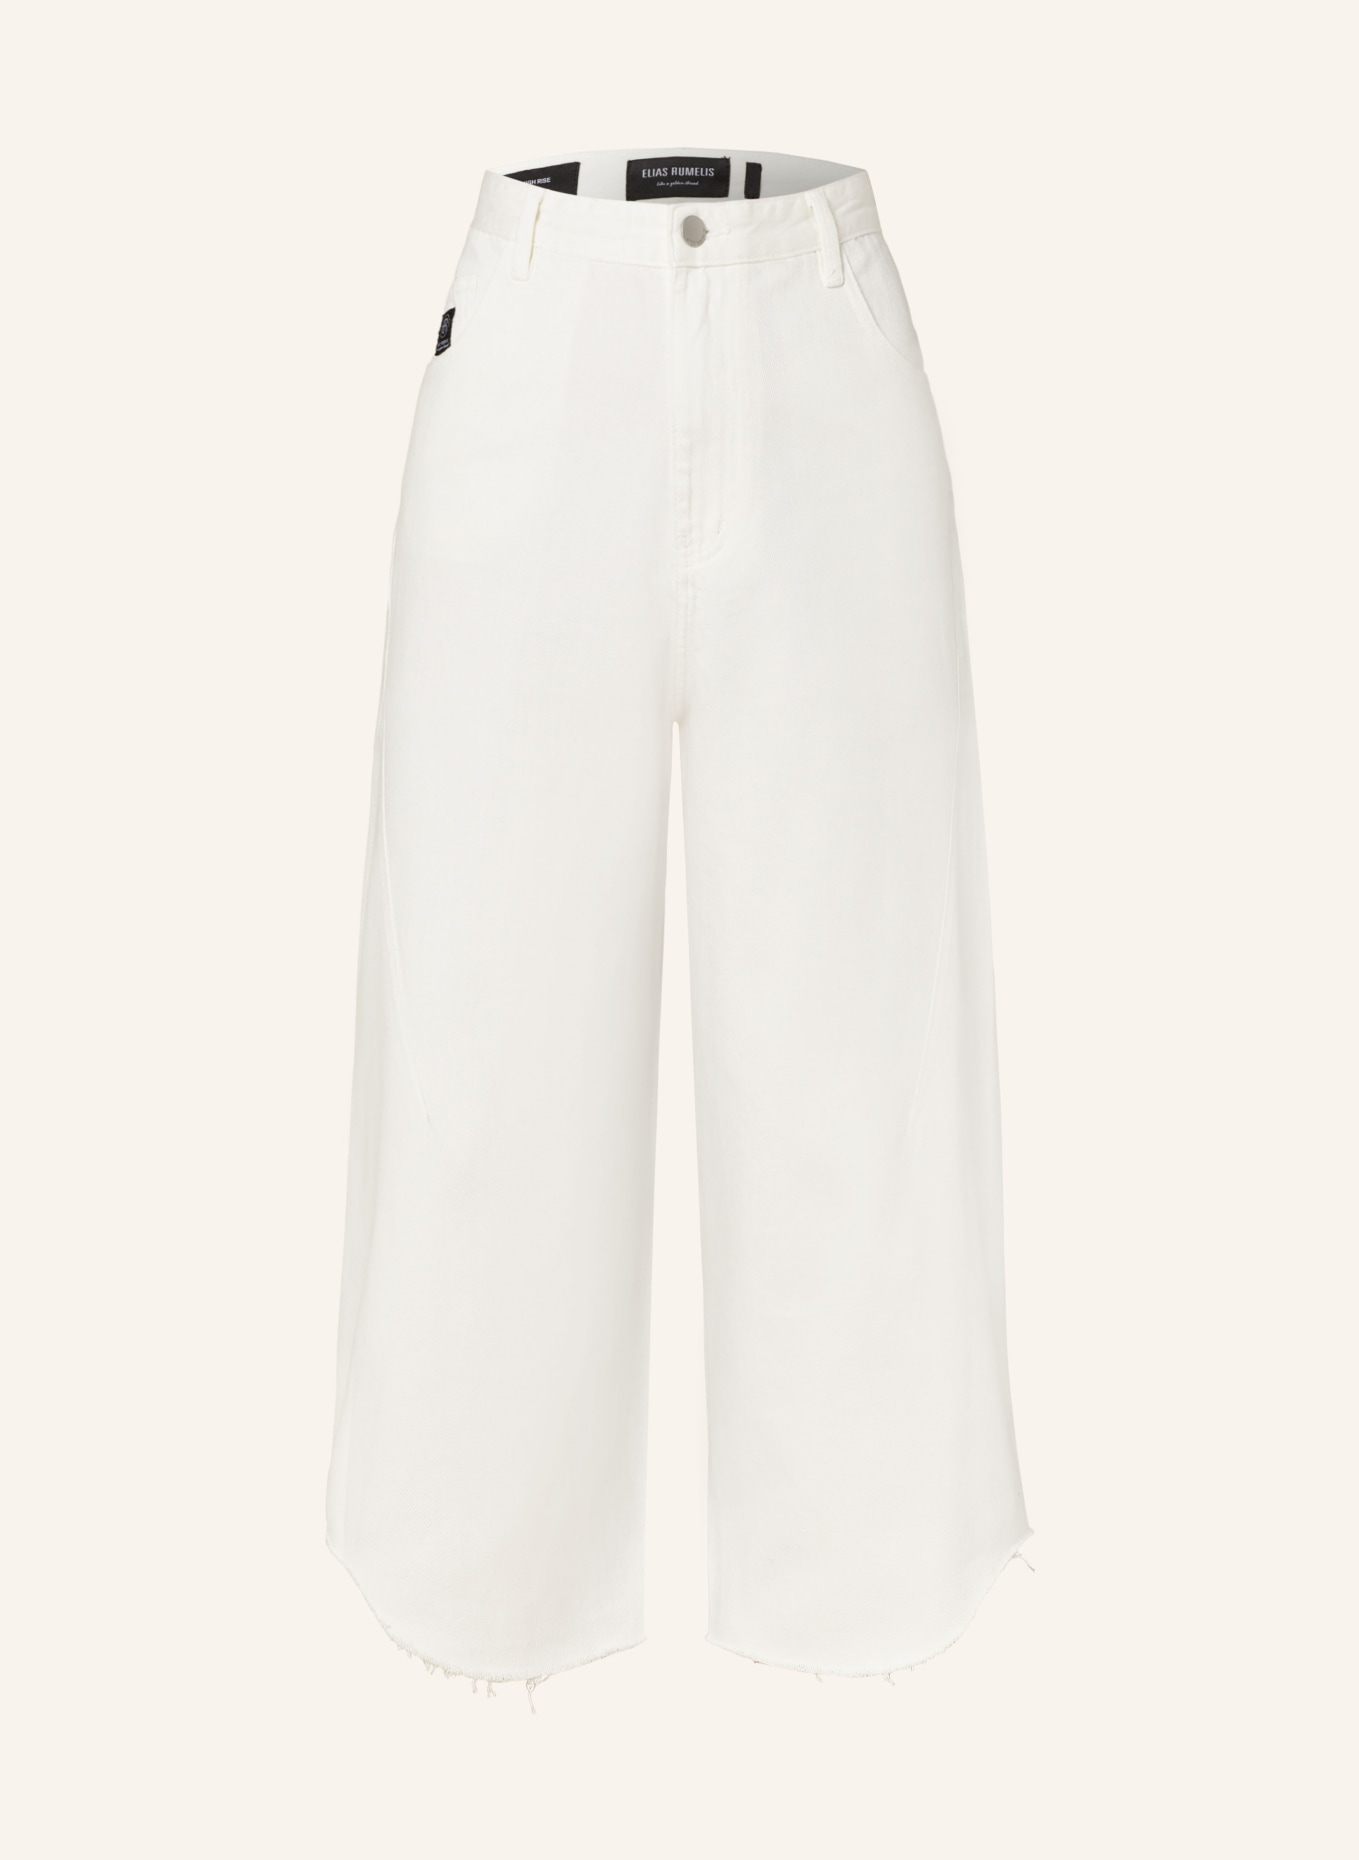 ELIAS RUMELIS Culotte jeans ERROMIE, Color: 253 off-white (Image 1)